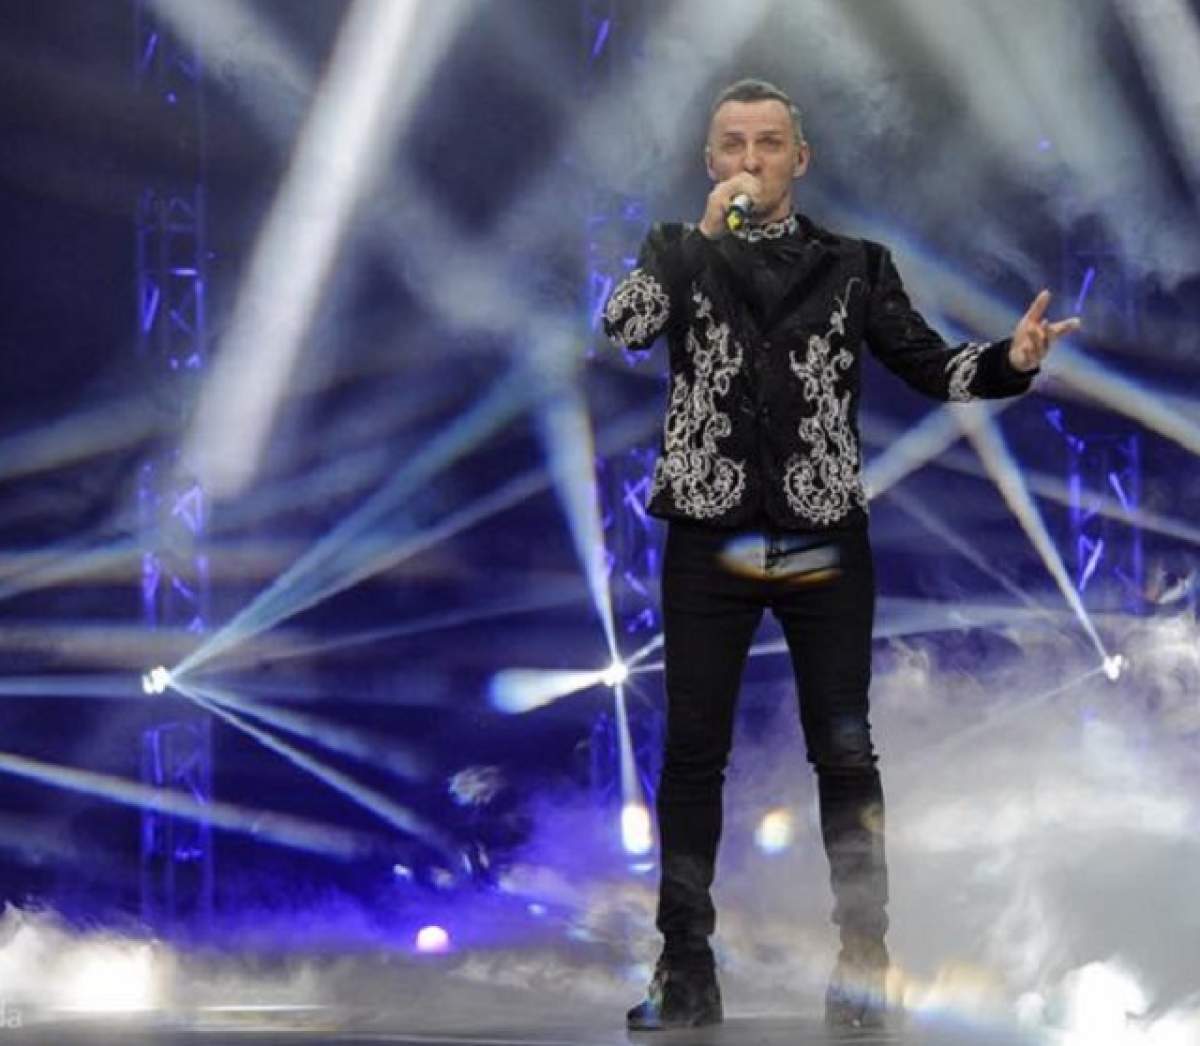 Reacția lui Mihai Trăistariu, după ce a pierdut la limită Eurovision 2017. Nimeni nu se aștepta să reacționeze așa